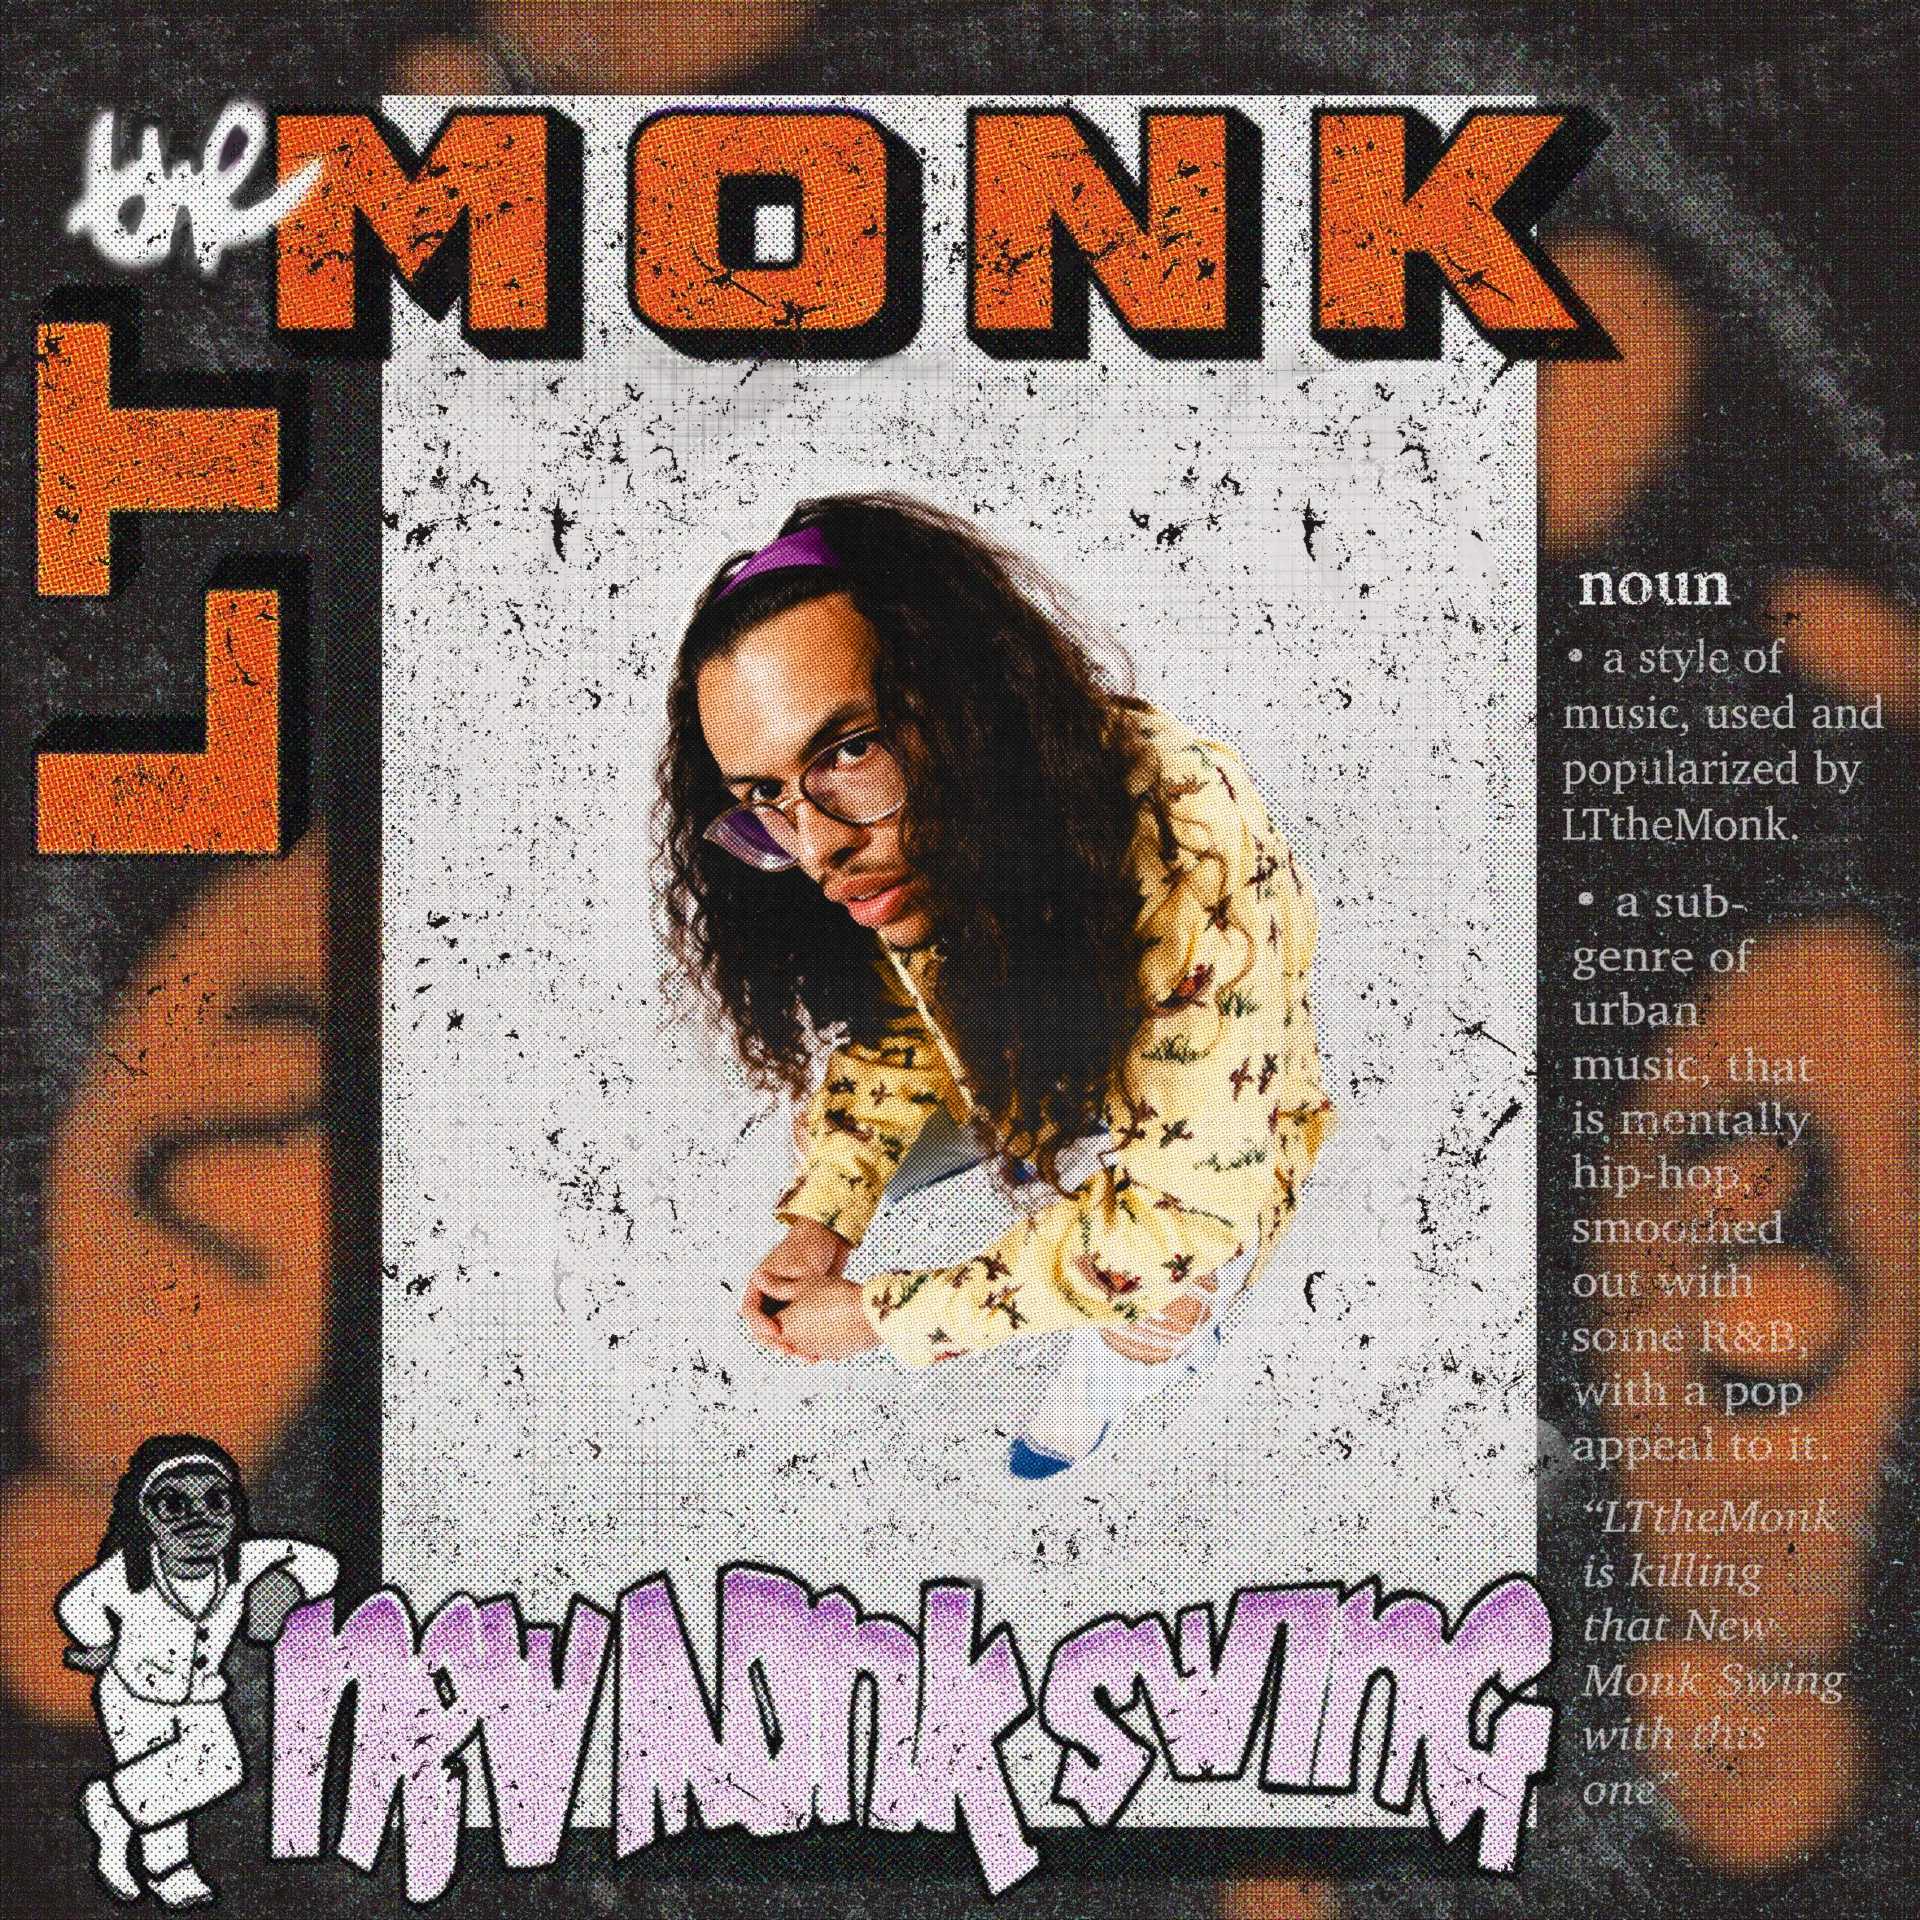 LTthemonk “New Monk Swing” single artwork